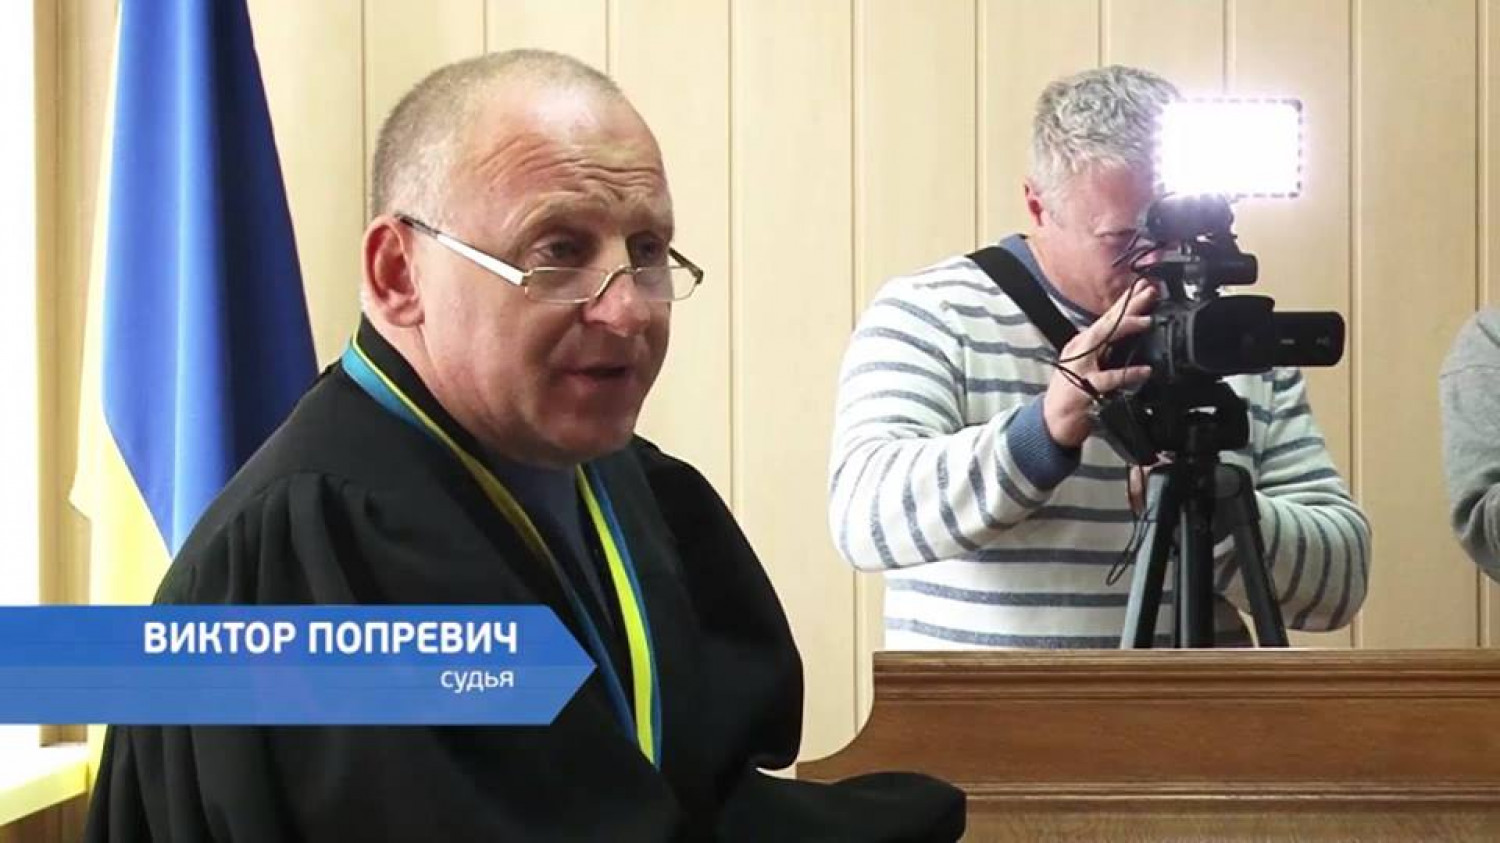 Судді Віктору Попревичу окрім претензій до професійних якостей закидають прихильність до комуністичної ідеології